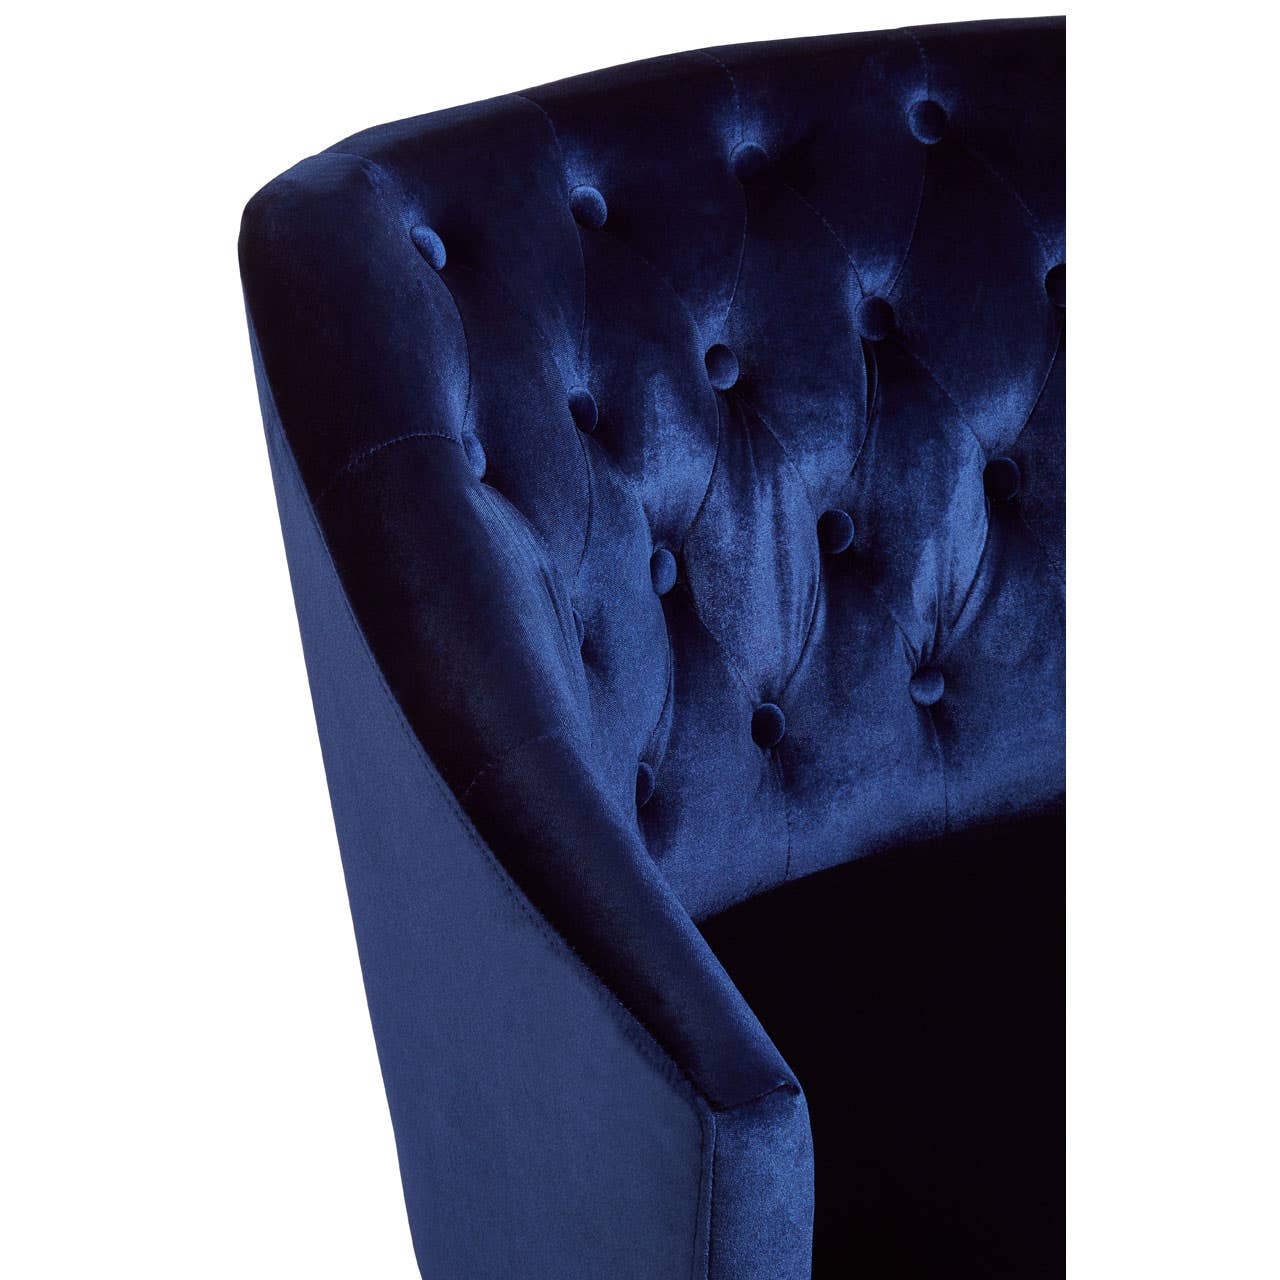 Noosa & Co. Living Darwin Blue Velvet Chair House of Isabella UK